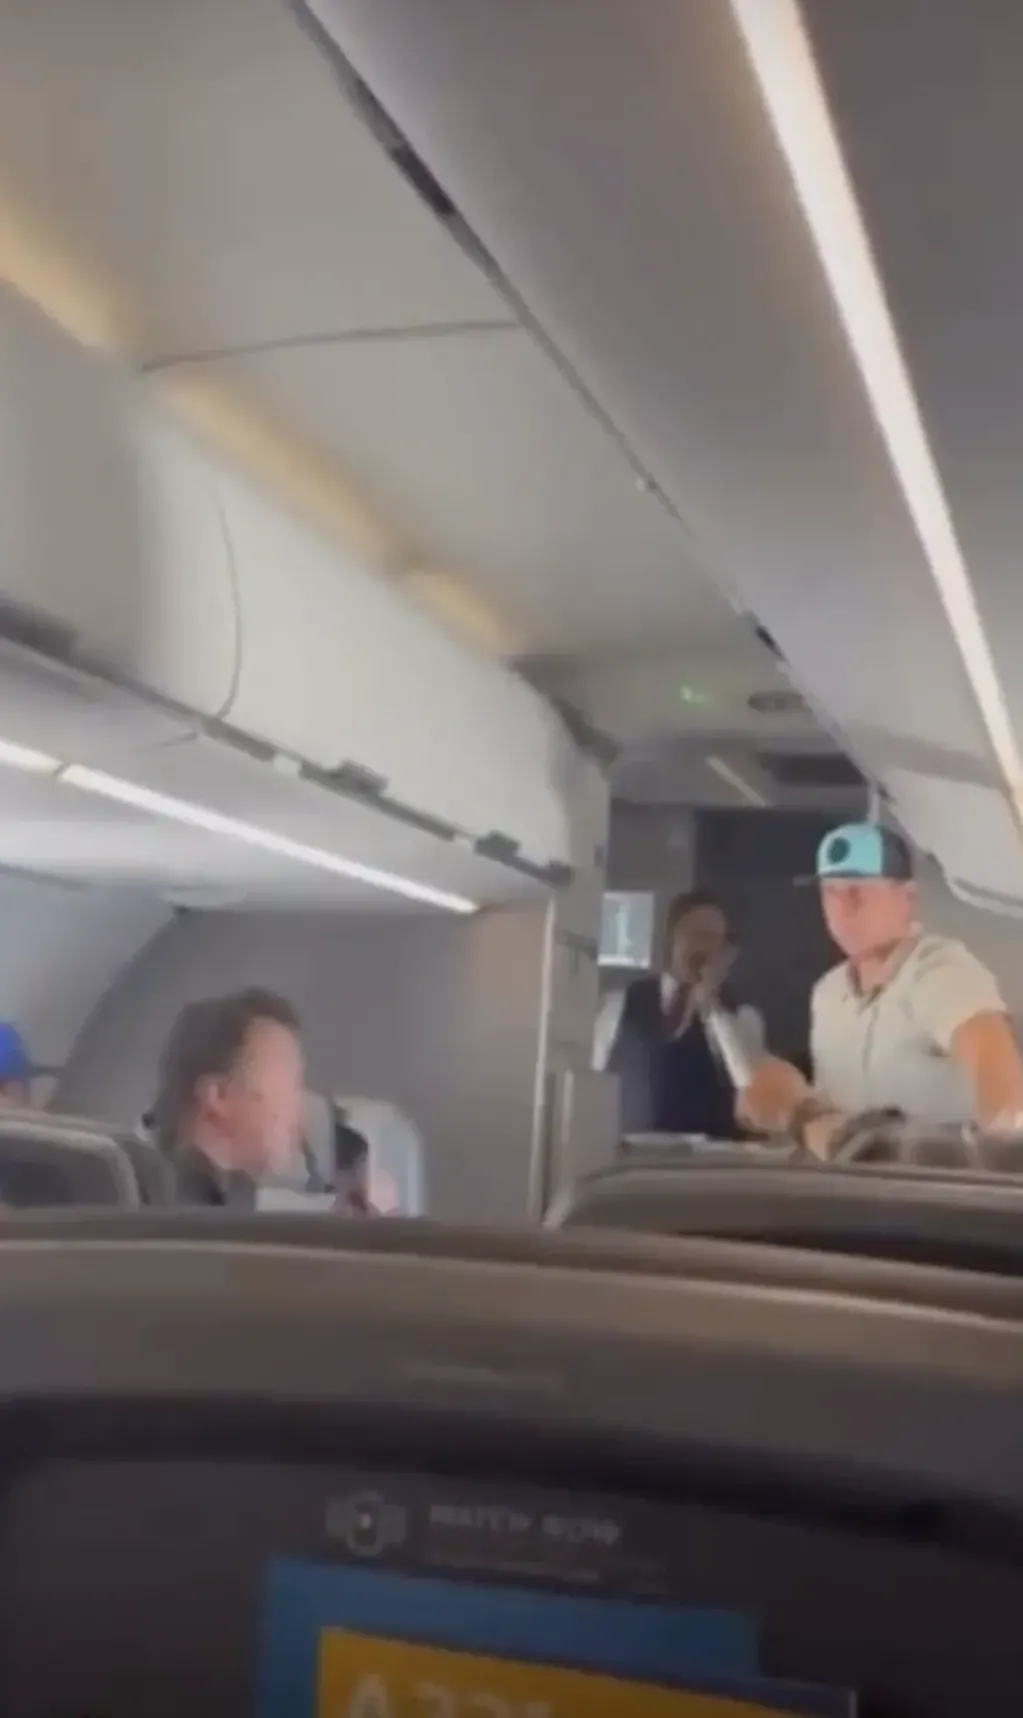 Los pasajeros ayudaron a detener al agresor del vuelo en Los Ángeles. Foto: Web